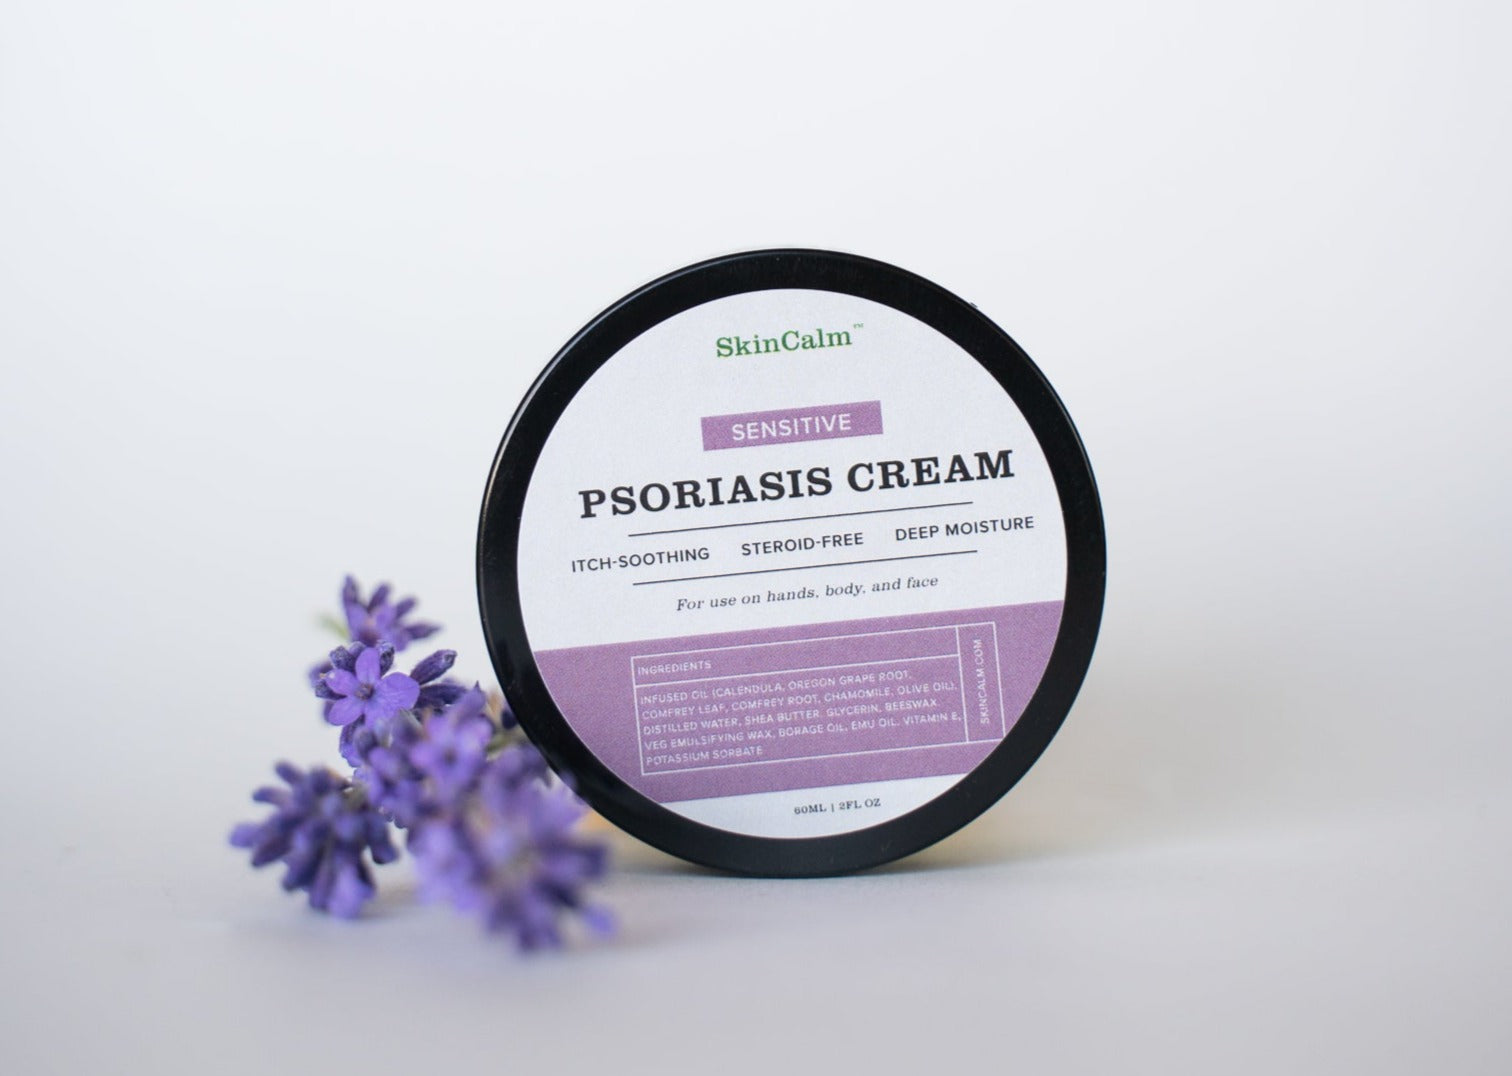 Psoriasis cream for sensitive cream